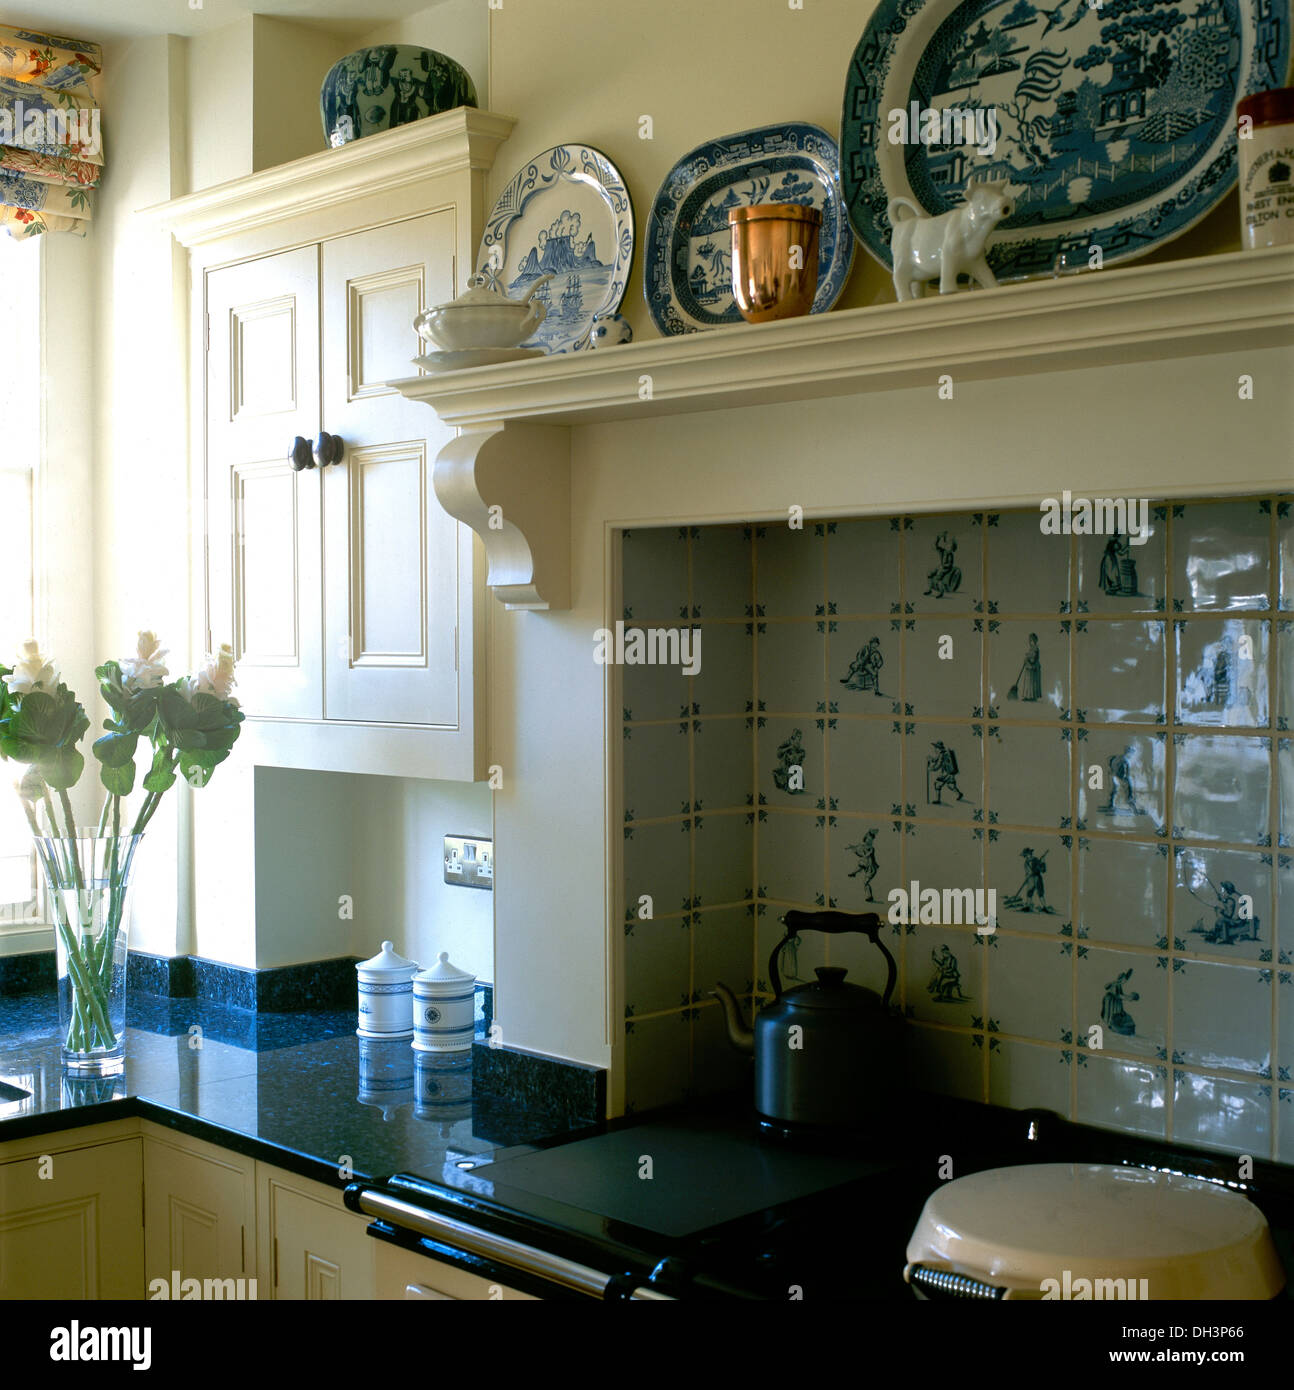 Nahaufnahme der blaue + weiße Platten auf Regal und blaue + weiße Delft-Stil  geflieste Wand über Aga-Ofen mit schwarz Wasserkocher im Landhaus-Küche  Stockfotografie - Alamy